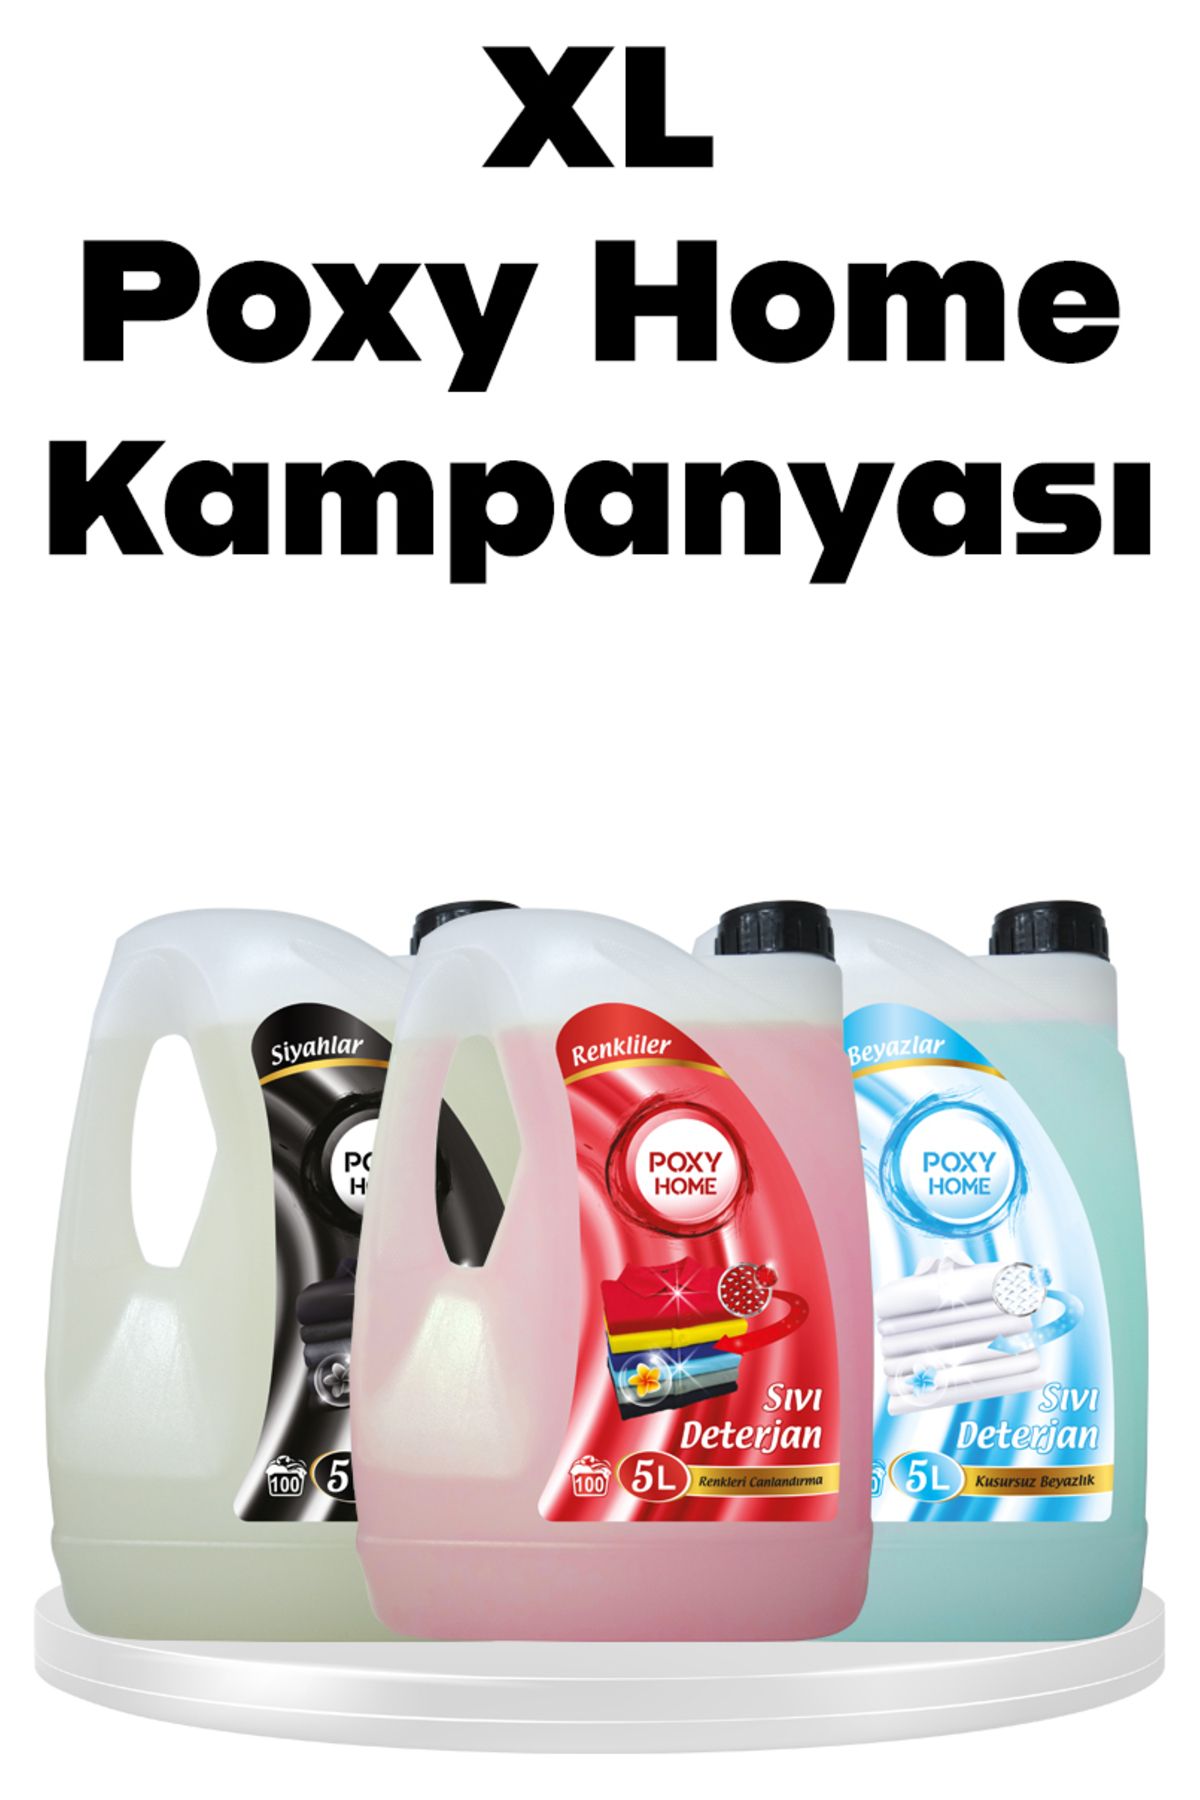 Poxy Home Xl Kampanyası Renkliler Beyazlar Siyahlar 5000 ml Yerli Ürün